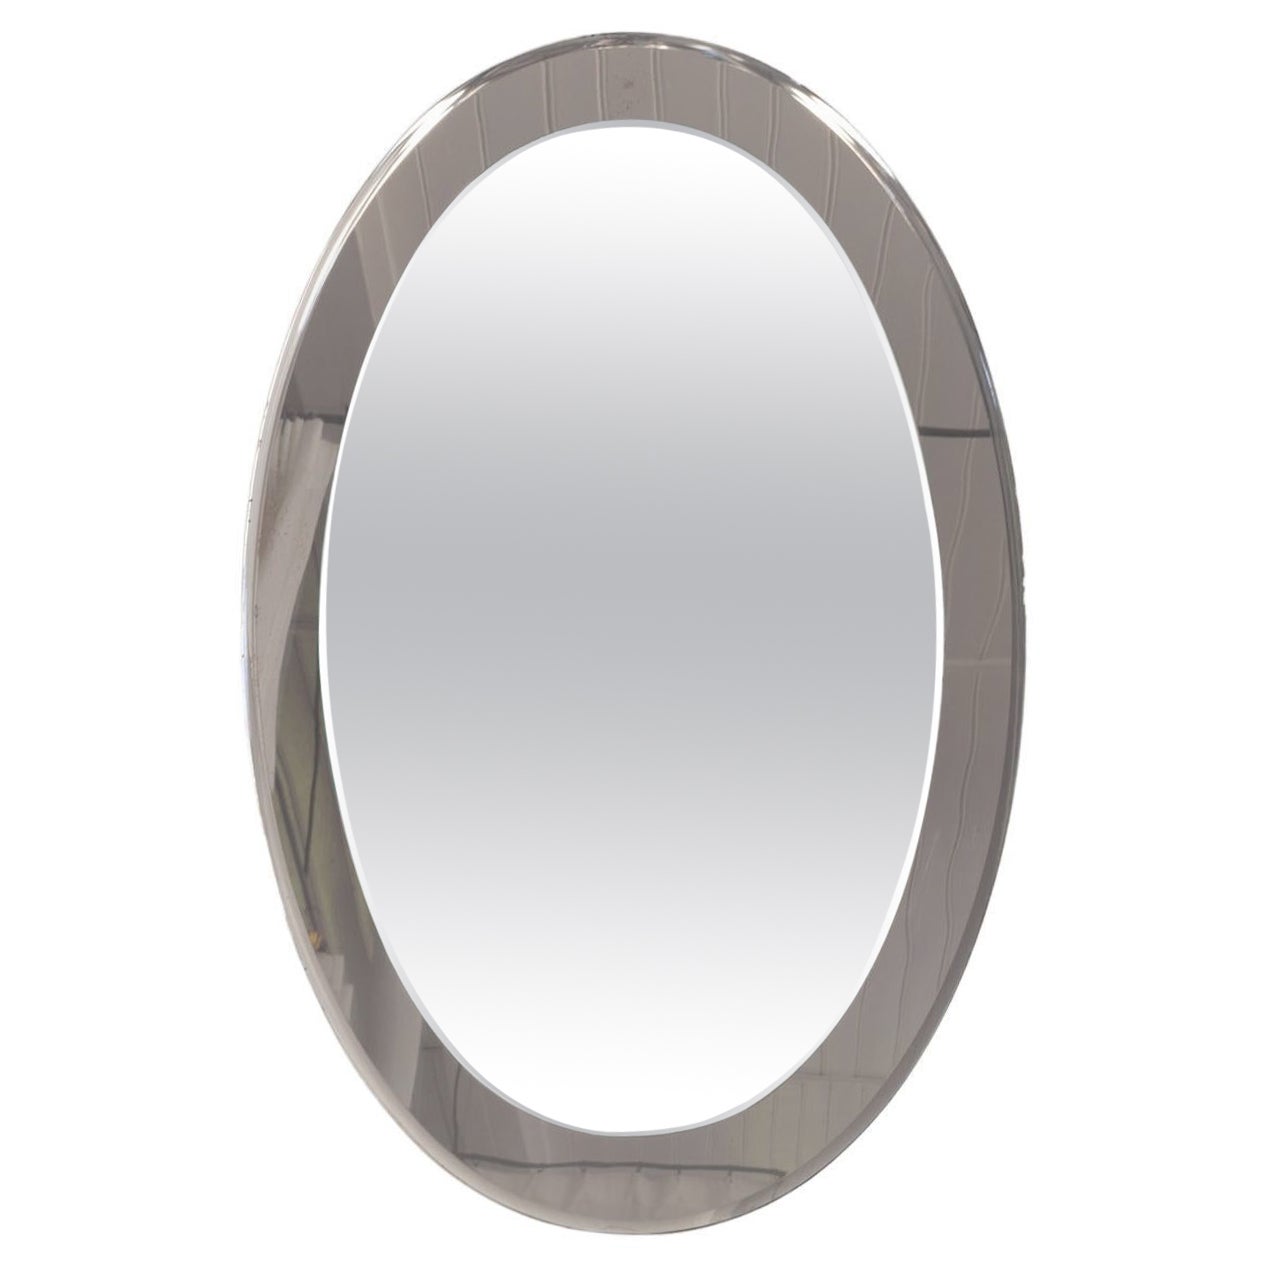 Oval Italian Twotone Mirror, Design: Antonio Lupi by Cristal Luxor, 1960s For Sale